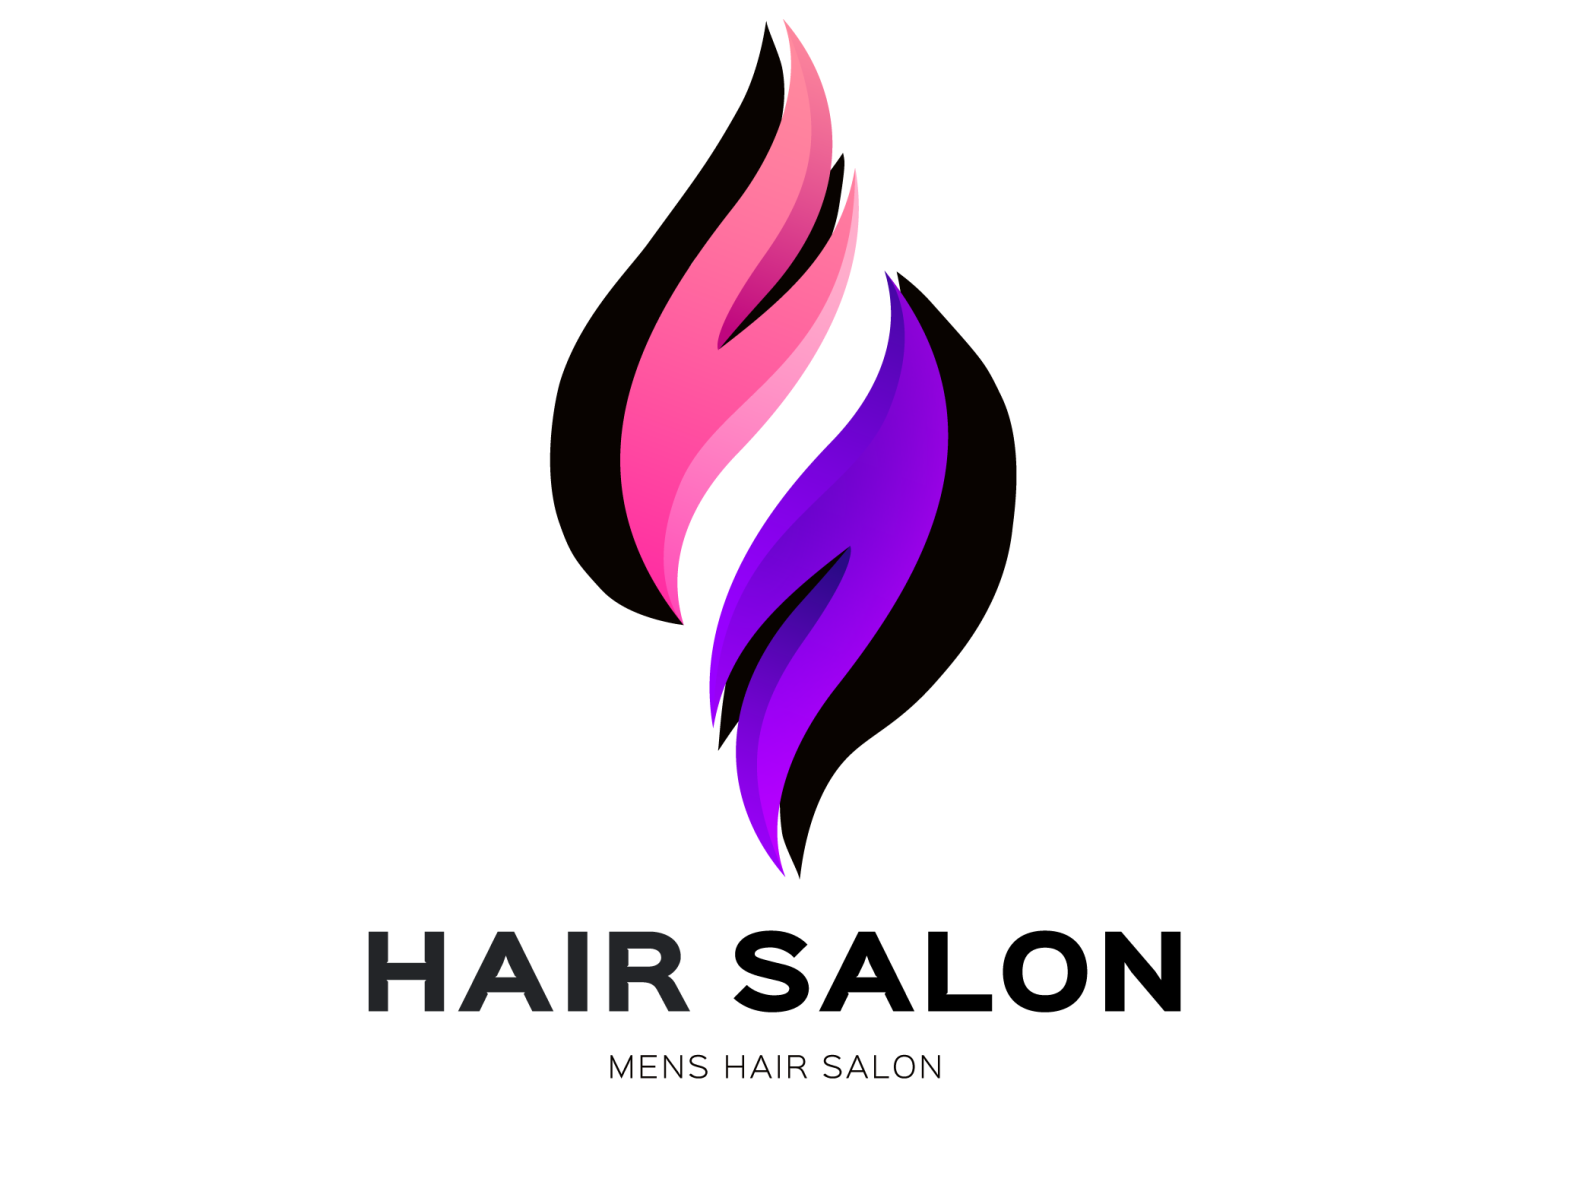 16+ Men Hair Salon Logos - Free & Premium Downloads